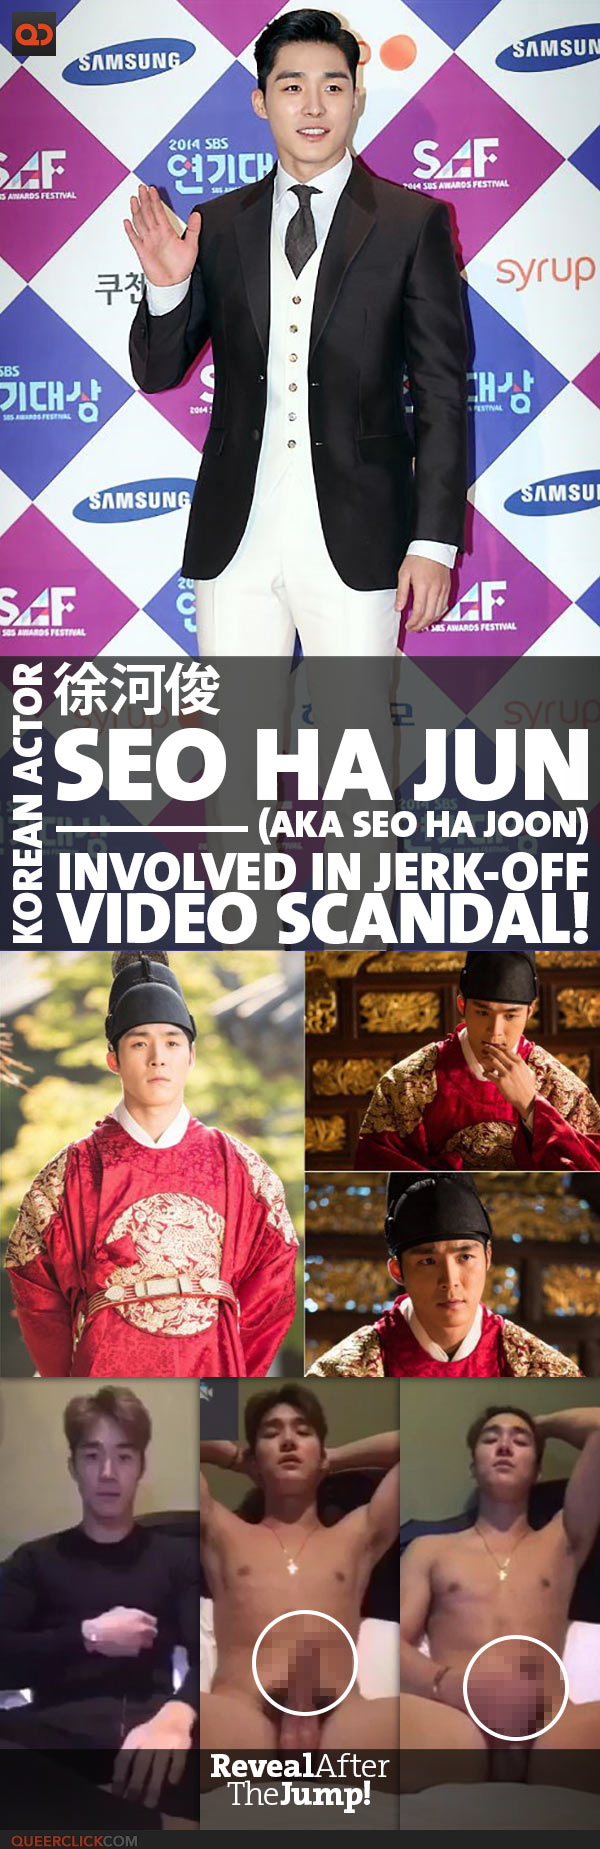 徐河俊 Seo Ha Jun (aka Seo Ha Joon), Korean Actor, Involved In Jerk-Off Video Scandal!